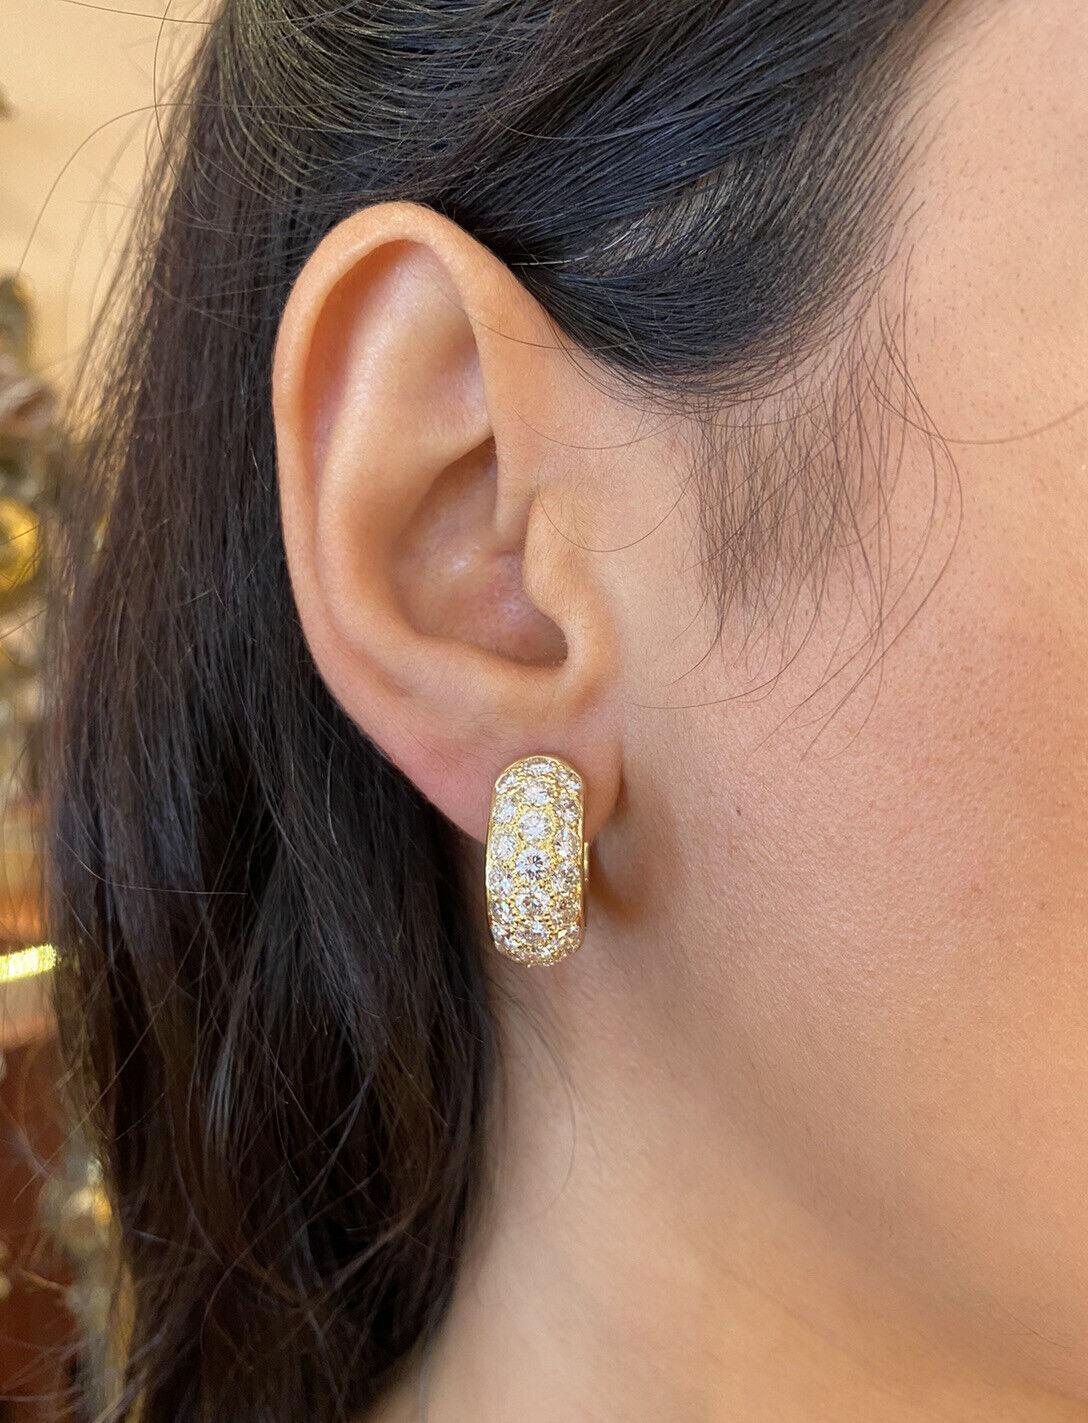 Pavé Hoop Diamond Earrings in 18k Yellow Gold

Pavé Hoop Diamond Earrings feature 44 Round Brilliant Cut Diamond set in 18k Yellow Gold.

Total diamond weight is 5.81 carats.

Earrings measure 7/8